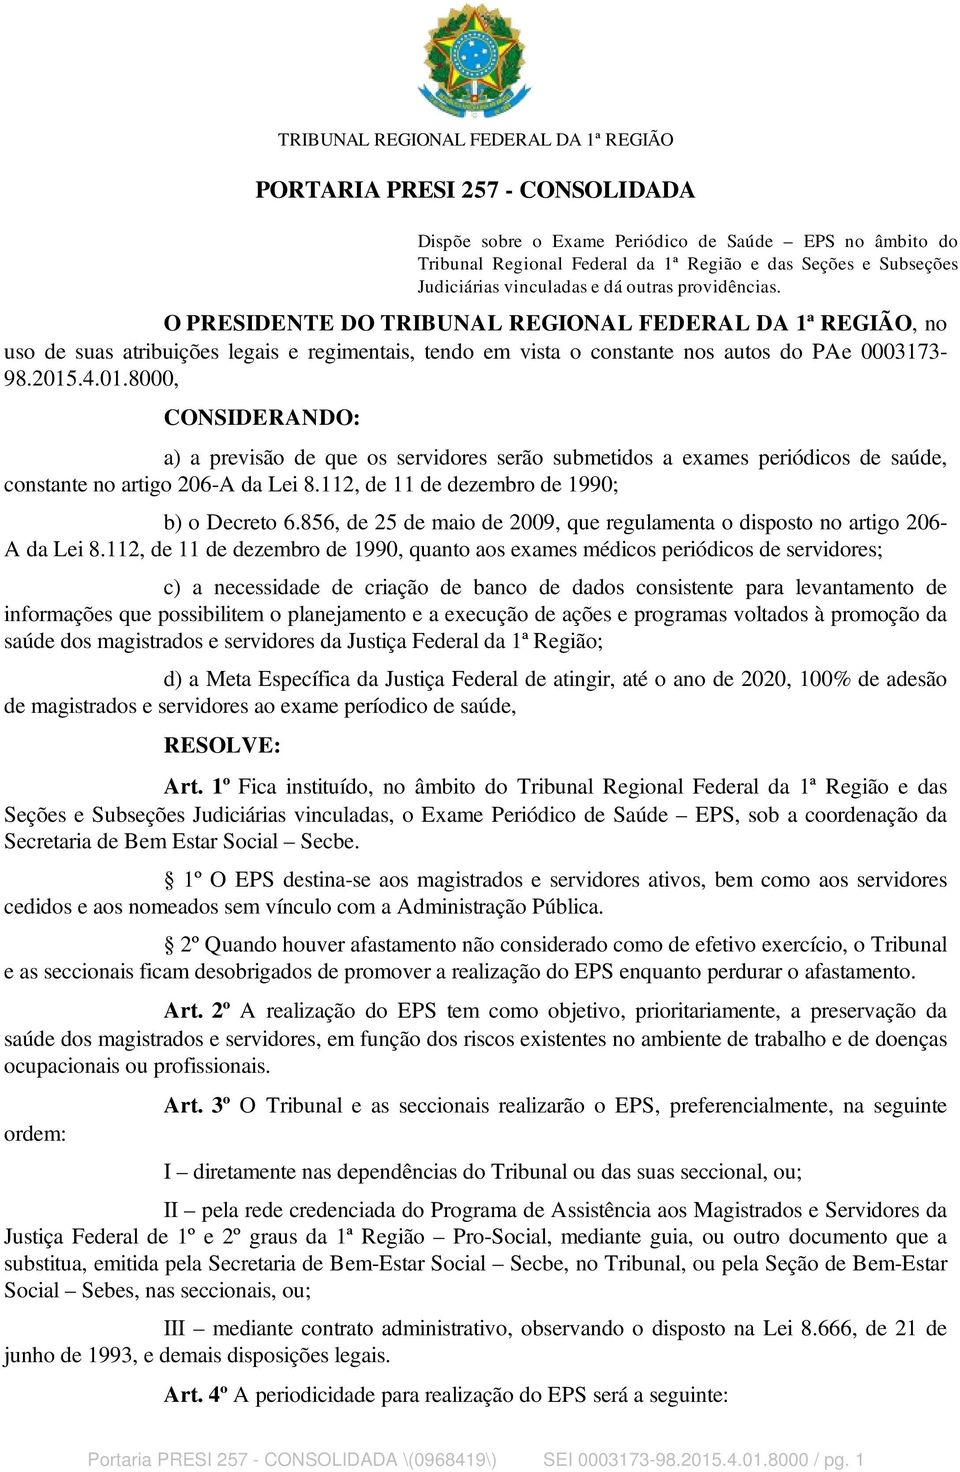 O PRESIDENTE DO TRIBUNAL REGIONAL FEDERAL DA 1ª REGIÃO, no uso de suas atribuições legais e regimentais, tendo em vista o constante nos autos do PAe 0003173-98.2015